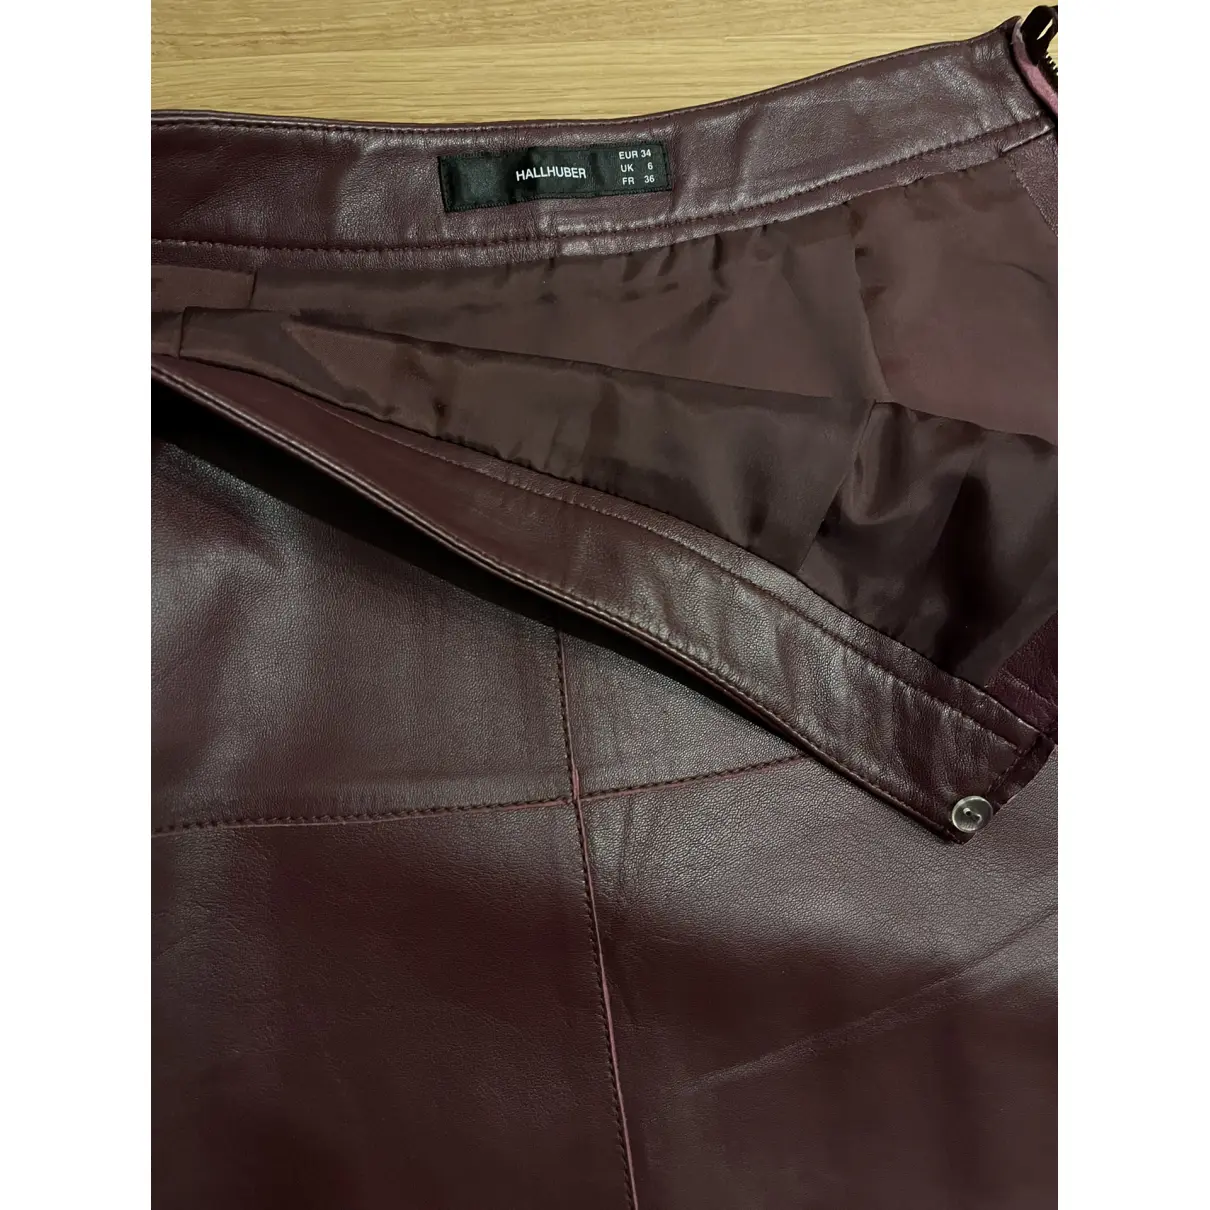 Buy Hallhuber Leather mini skirt online